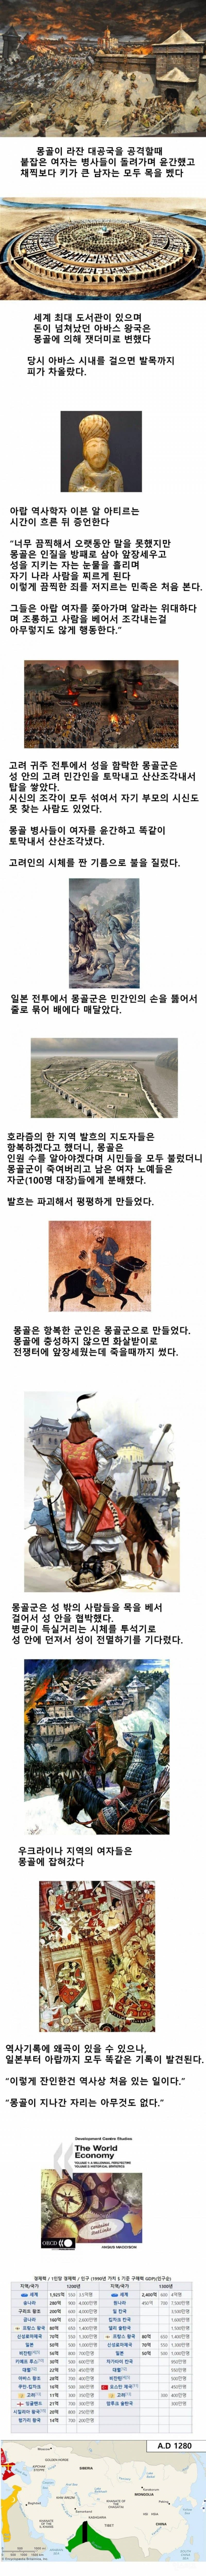 ㅎㅇㅈㅇ) 몽골군의 잔인함 | 인스티즈